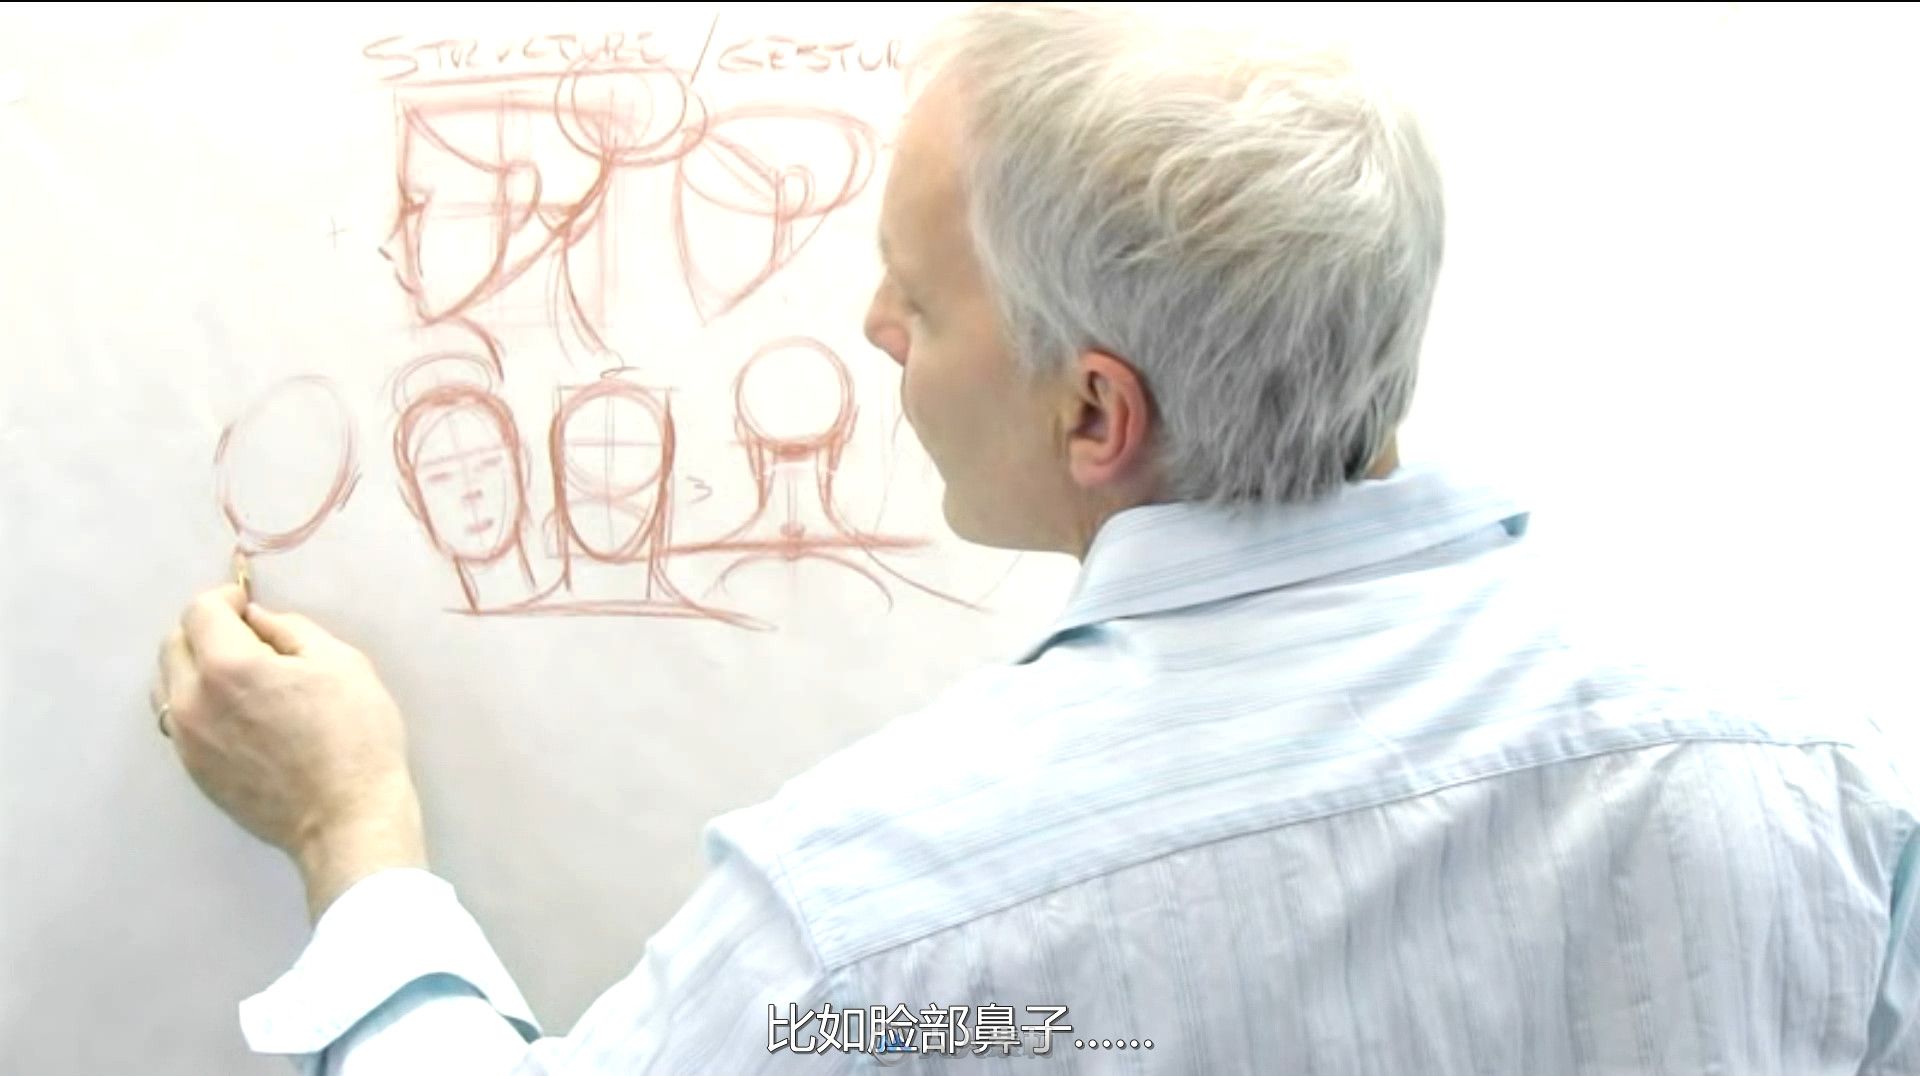 第144期中文字幕翻译教程《人体结构绘画训练大师班视频教程》 人人素材字幕组